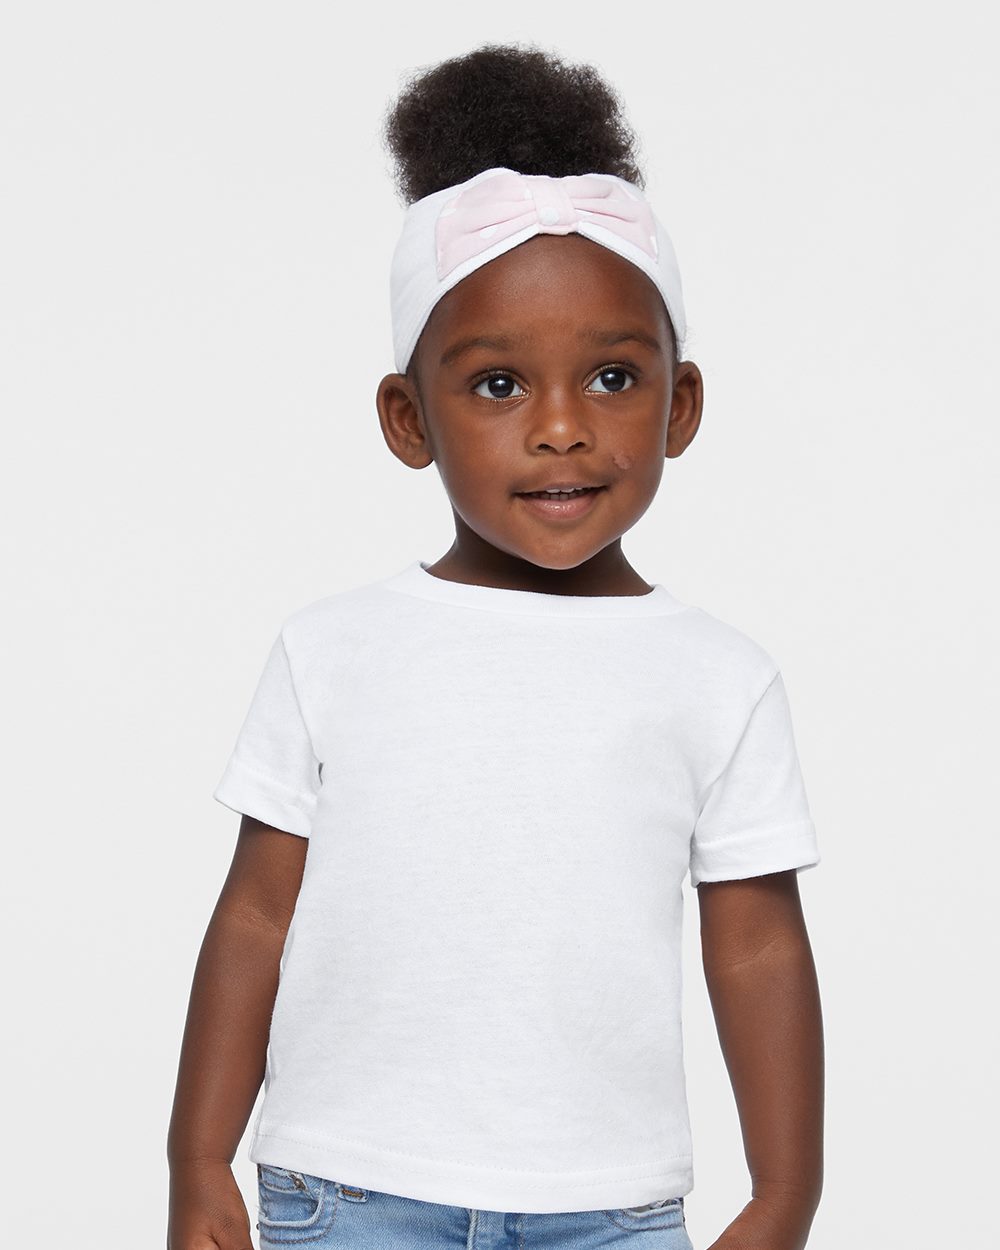 37 Colors Rabbit Skins Infant Short Sleeve Cotton T-Shirt 3401 6M 12M 18M 24M